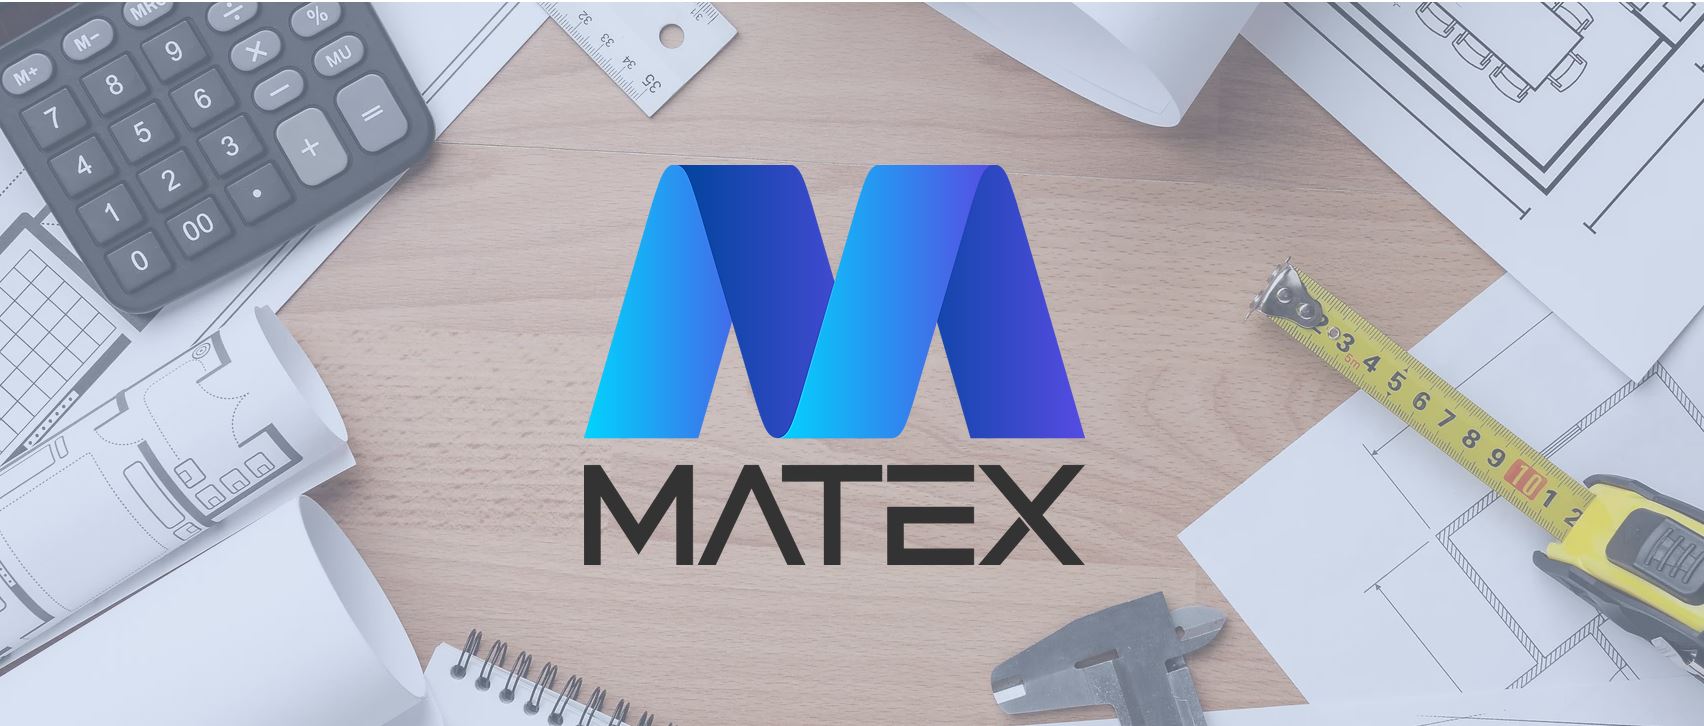 matex-banner